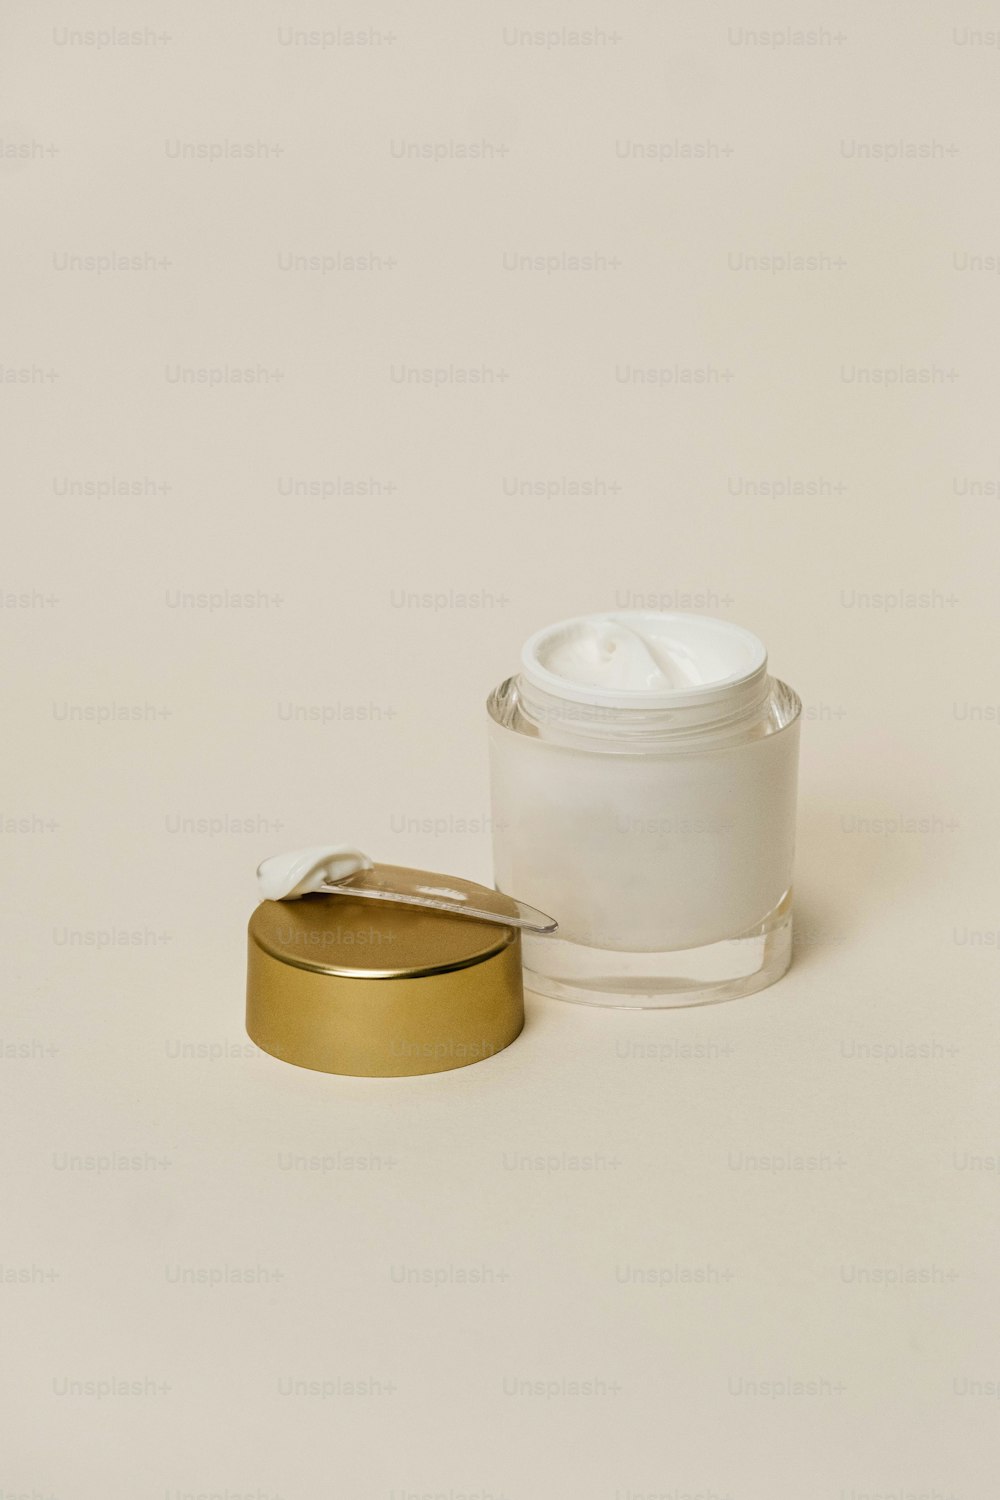 um recipiente branco com uma tampa dourada ao lado de um recipiente branco